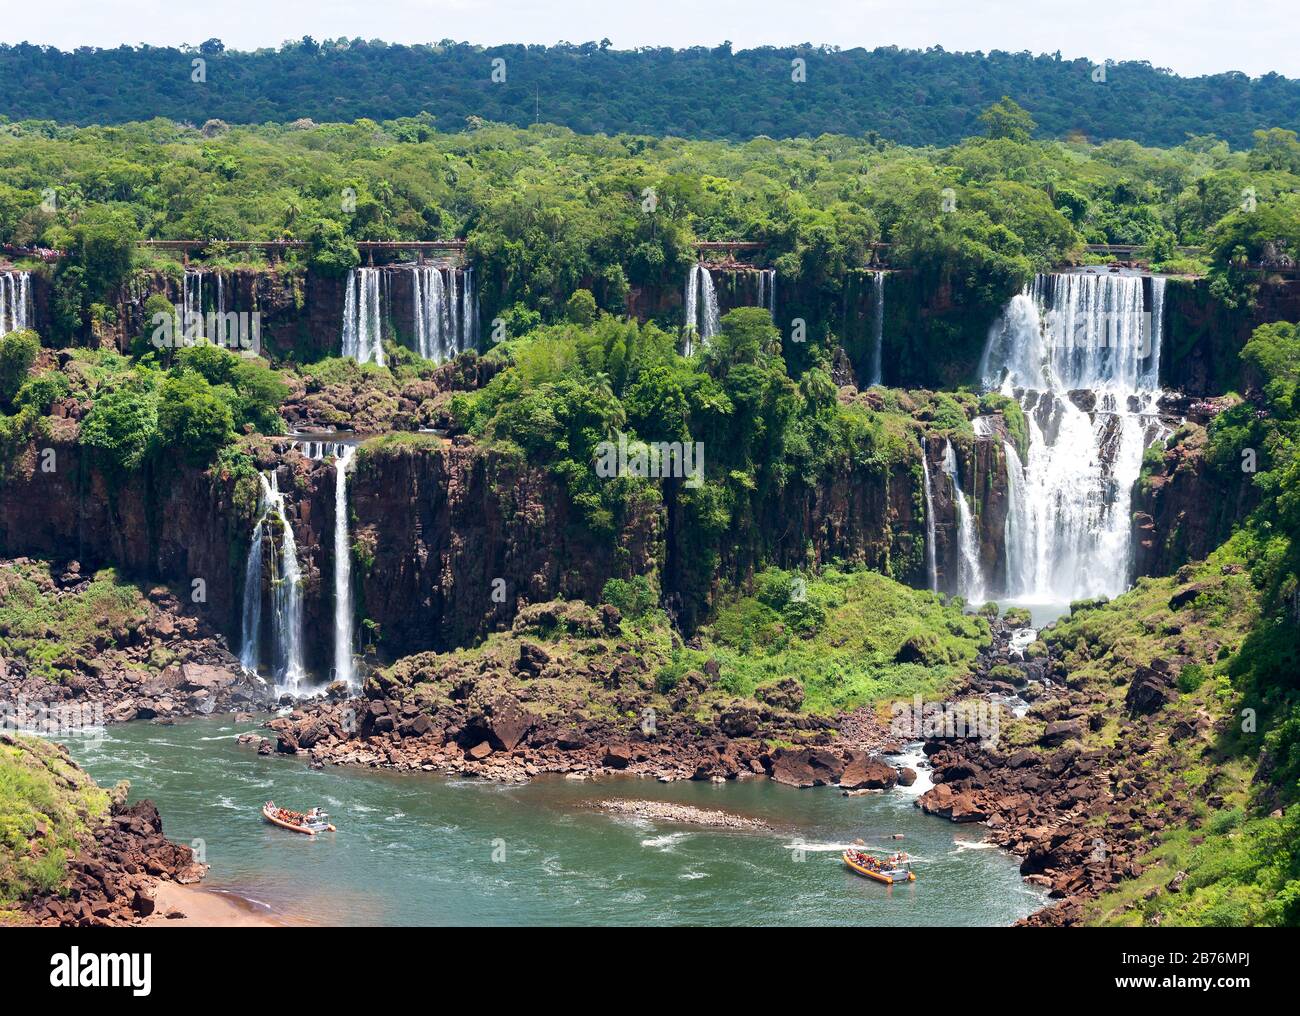 Vue sur les chutes de Cataratas do Iguaçu / Iguasu à la frontière du Brésil et de l'Argentine. Paysage de forêt tropicale avec plusieurs chutes d'eau et rochers visibles. Banque D'Images